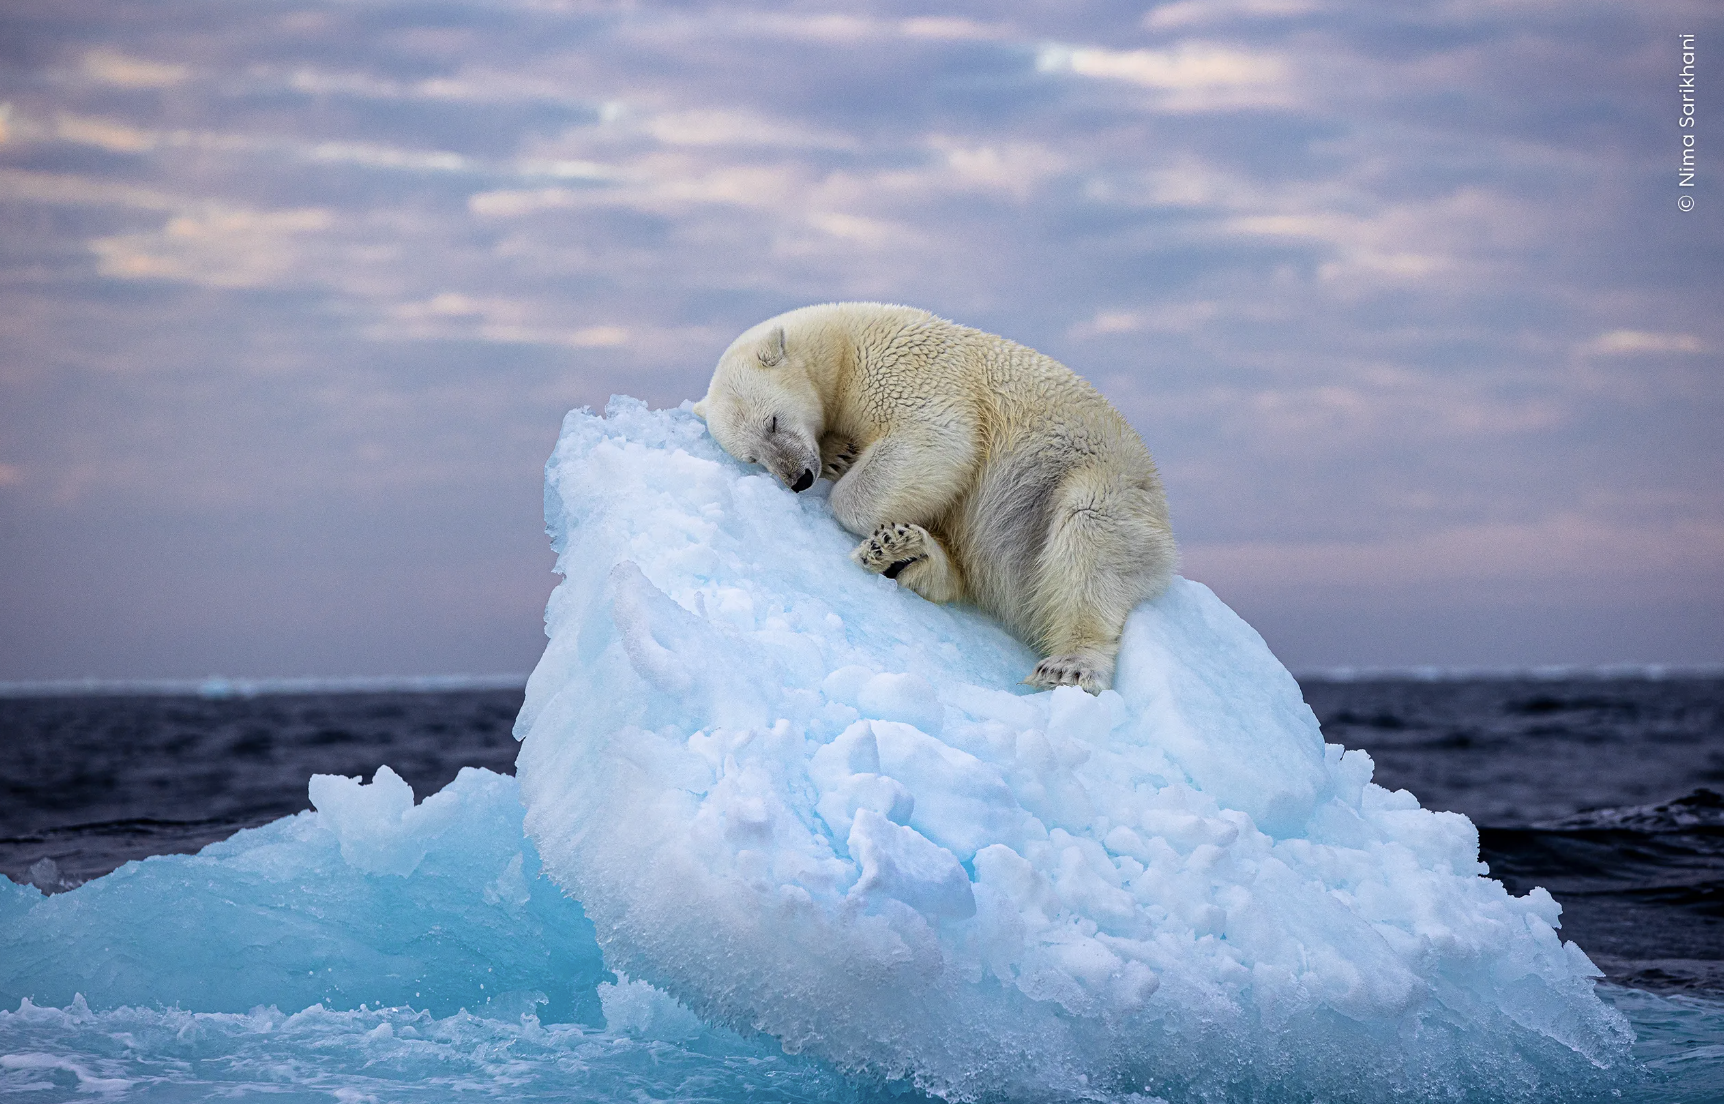 Η πολική αρκούδα που ξεκουράζεται πάνω σε παγόβουνο κέρδισε το βραβείο φωτογραφίας άγριας ζωής